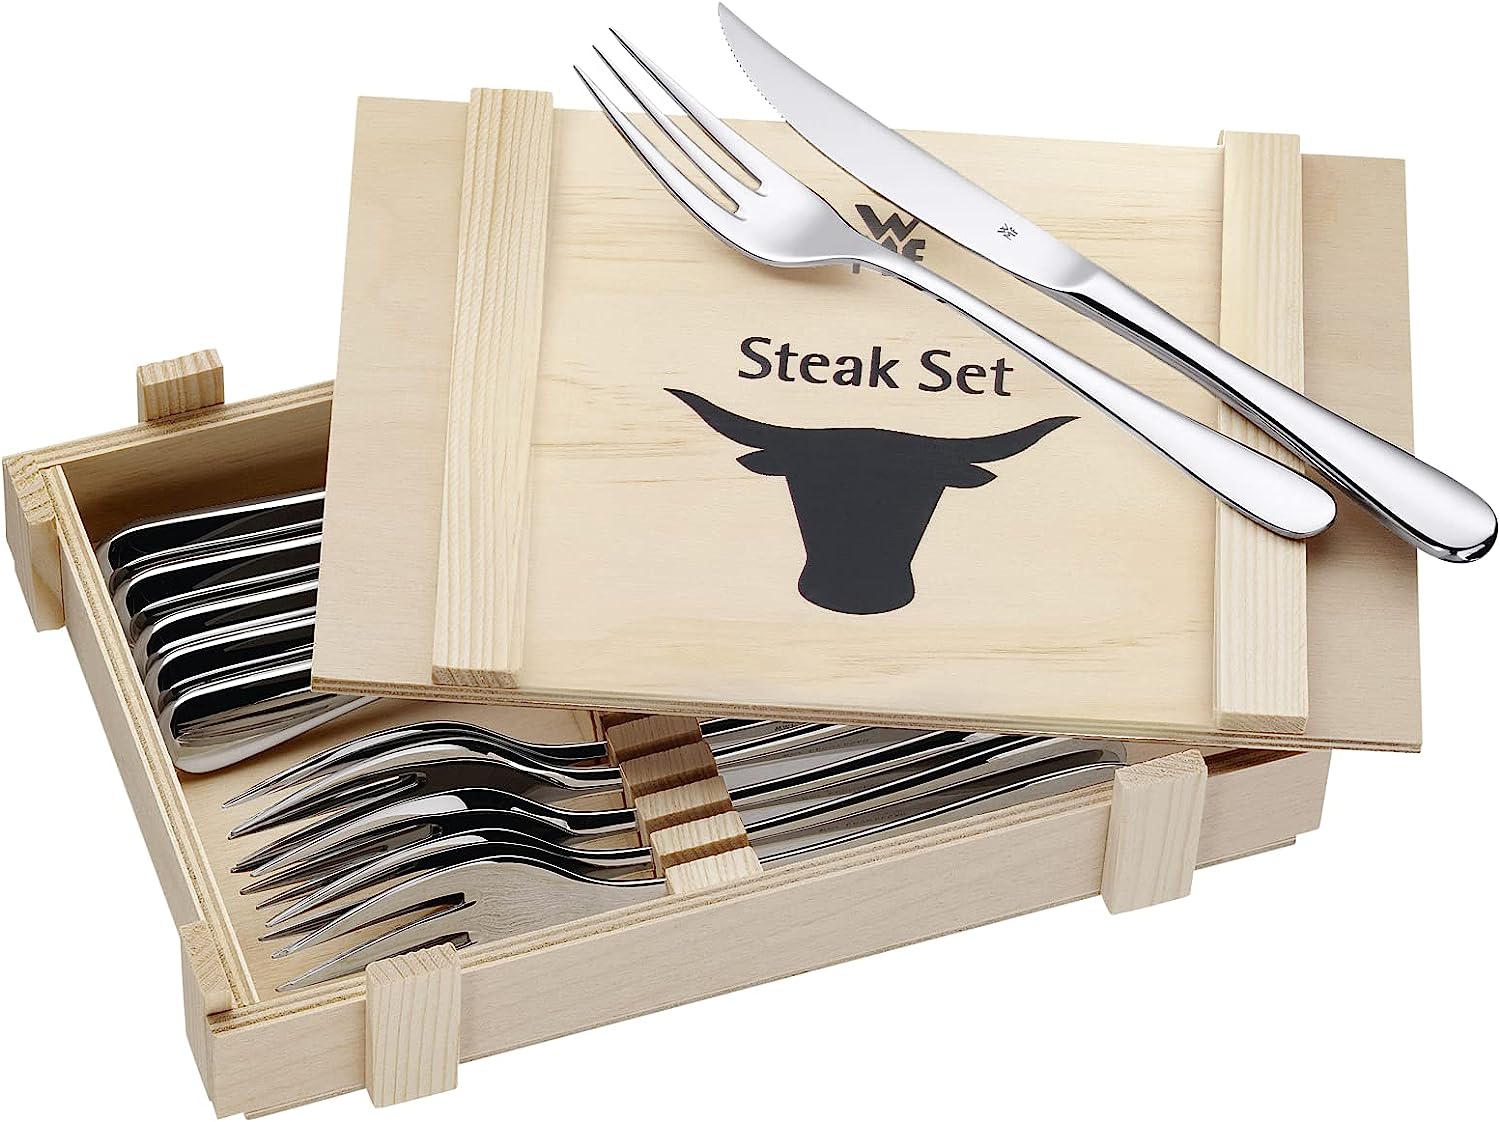 WMF Steakbesteck 12-teilig, Steakbesteck Set für 6 Personen, Steakmesser Set, Steakgabel, Cromargan Edelstahl poliert, Grillbesteck in Holzkiste